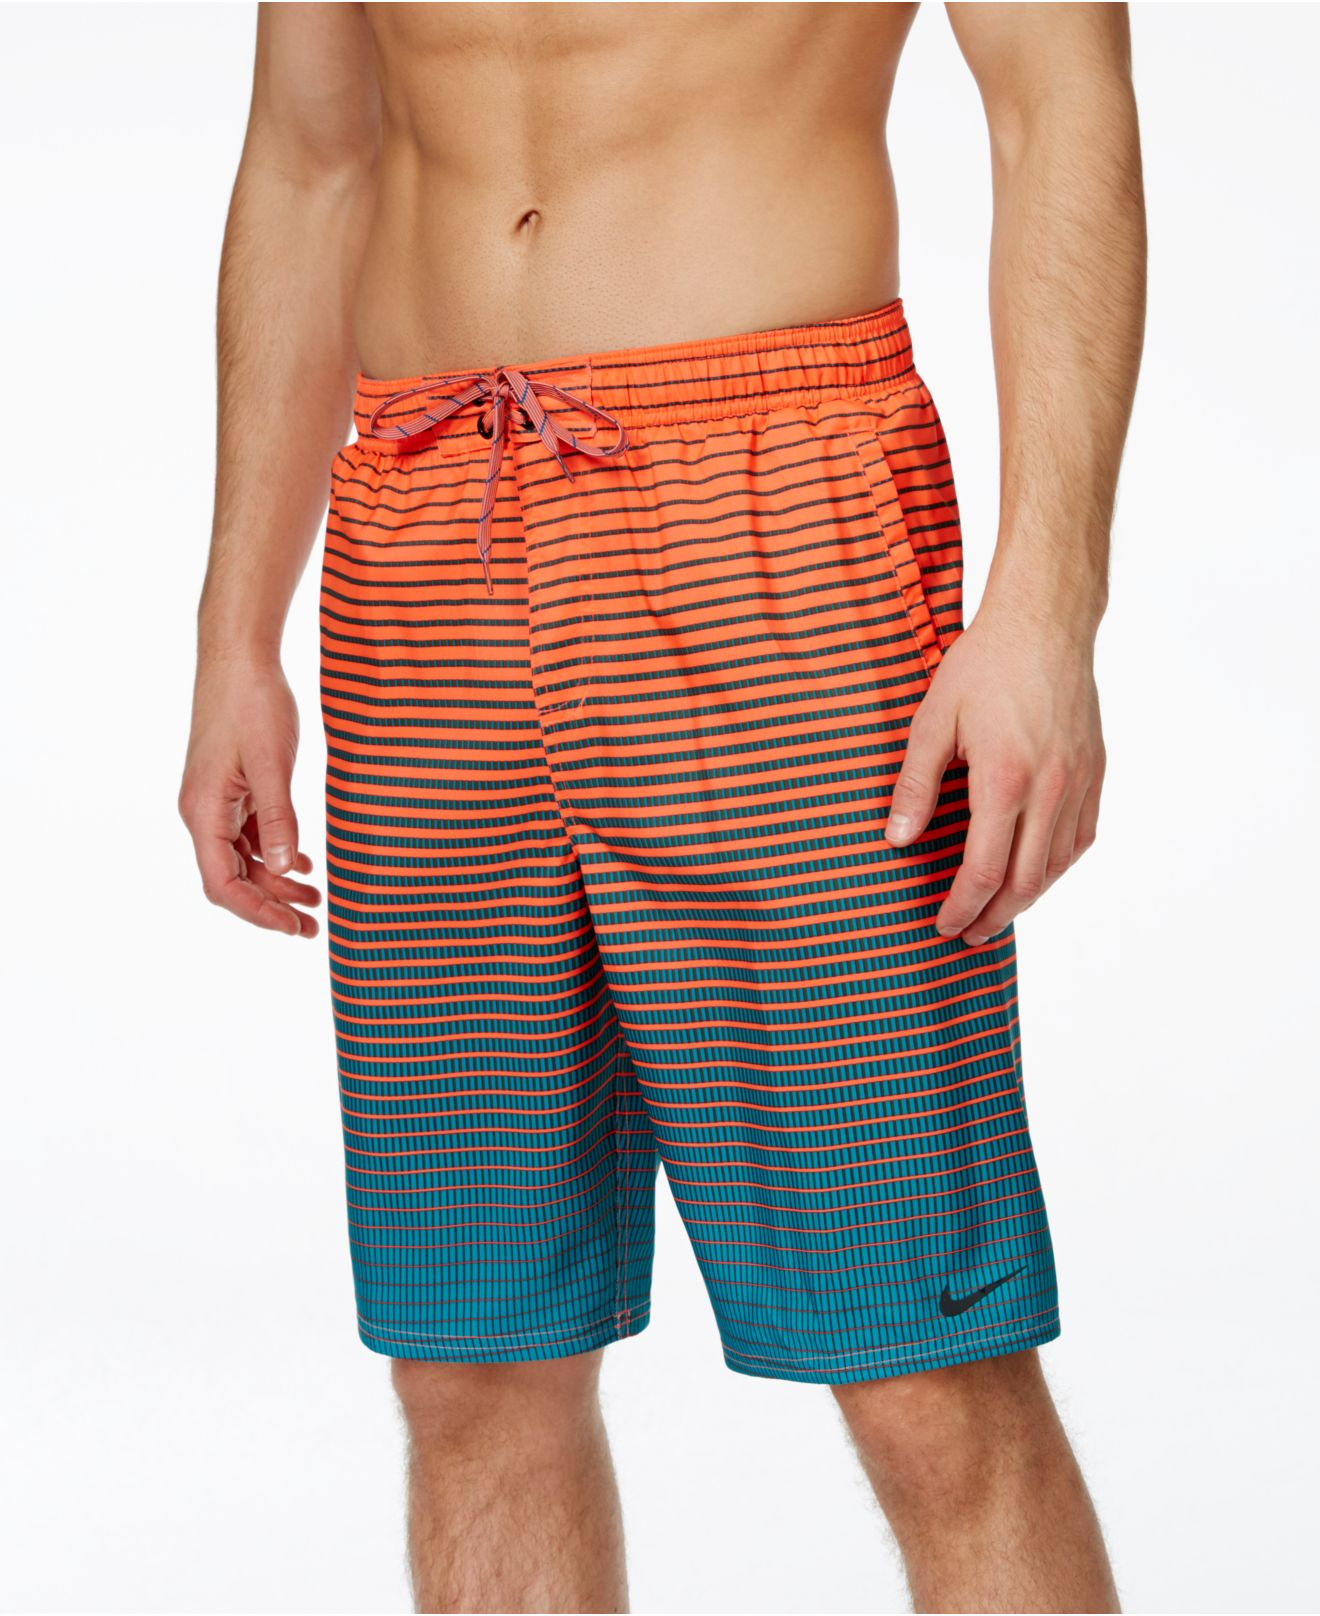 Lyst - Nike Performance Quick Dry Swim Trunks in Orange for Men